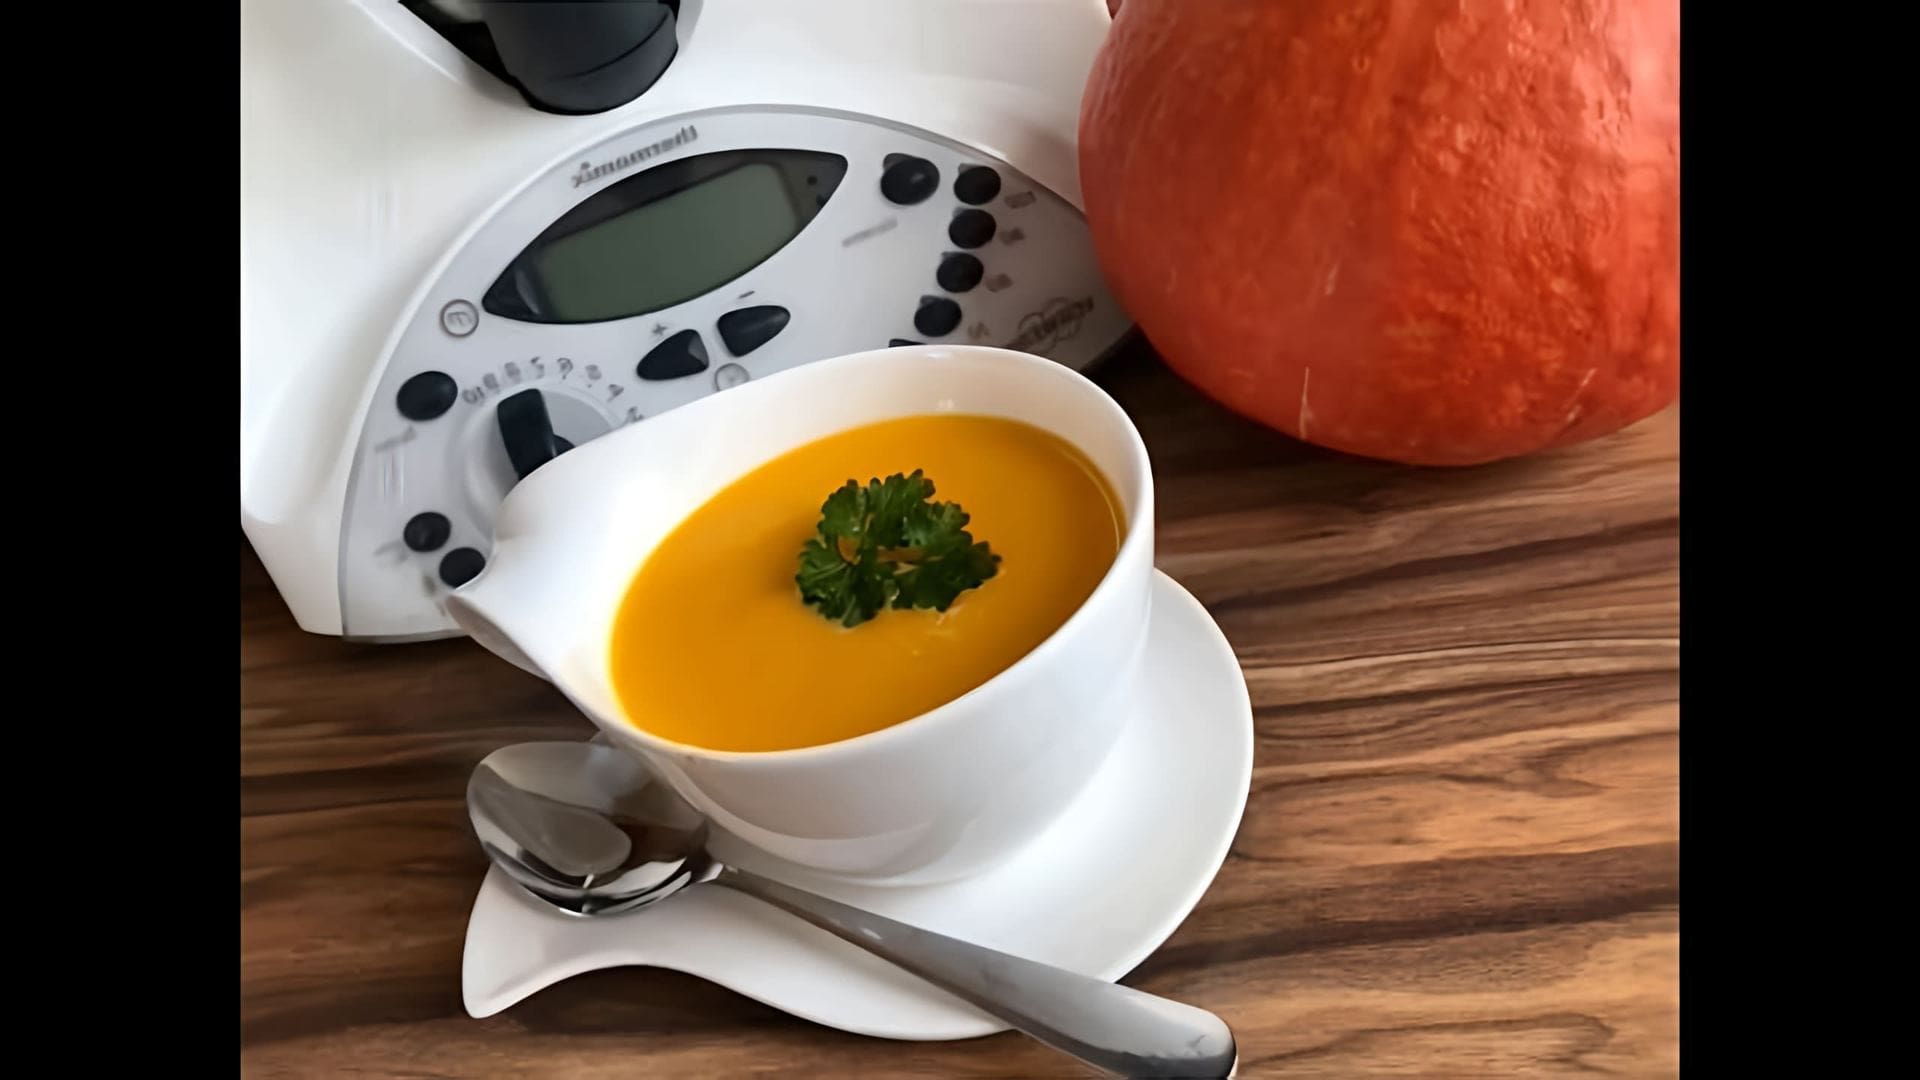 Очень вкусный Тыквенный суп пюре в термомиксе - это видео-ролик, который демонстрирует процесс приготовления вкусного и полезного блюда